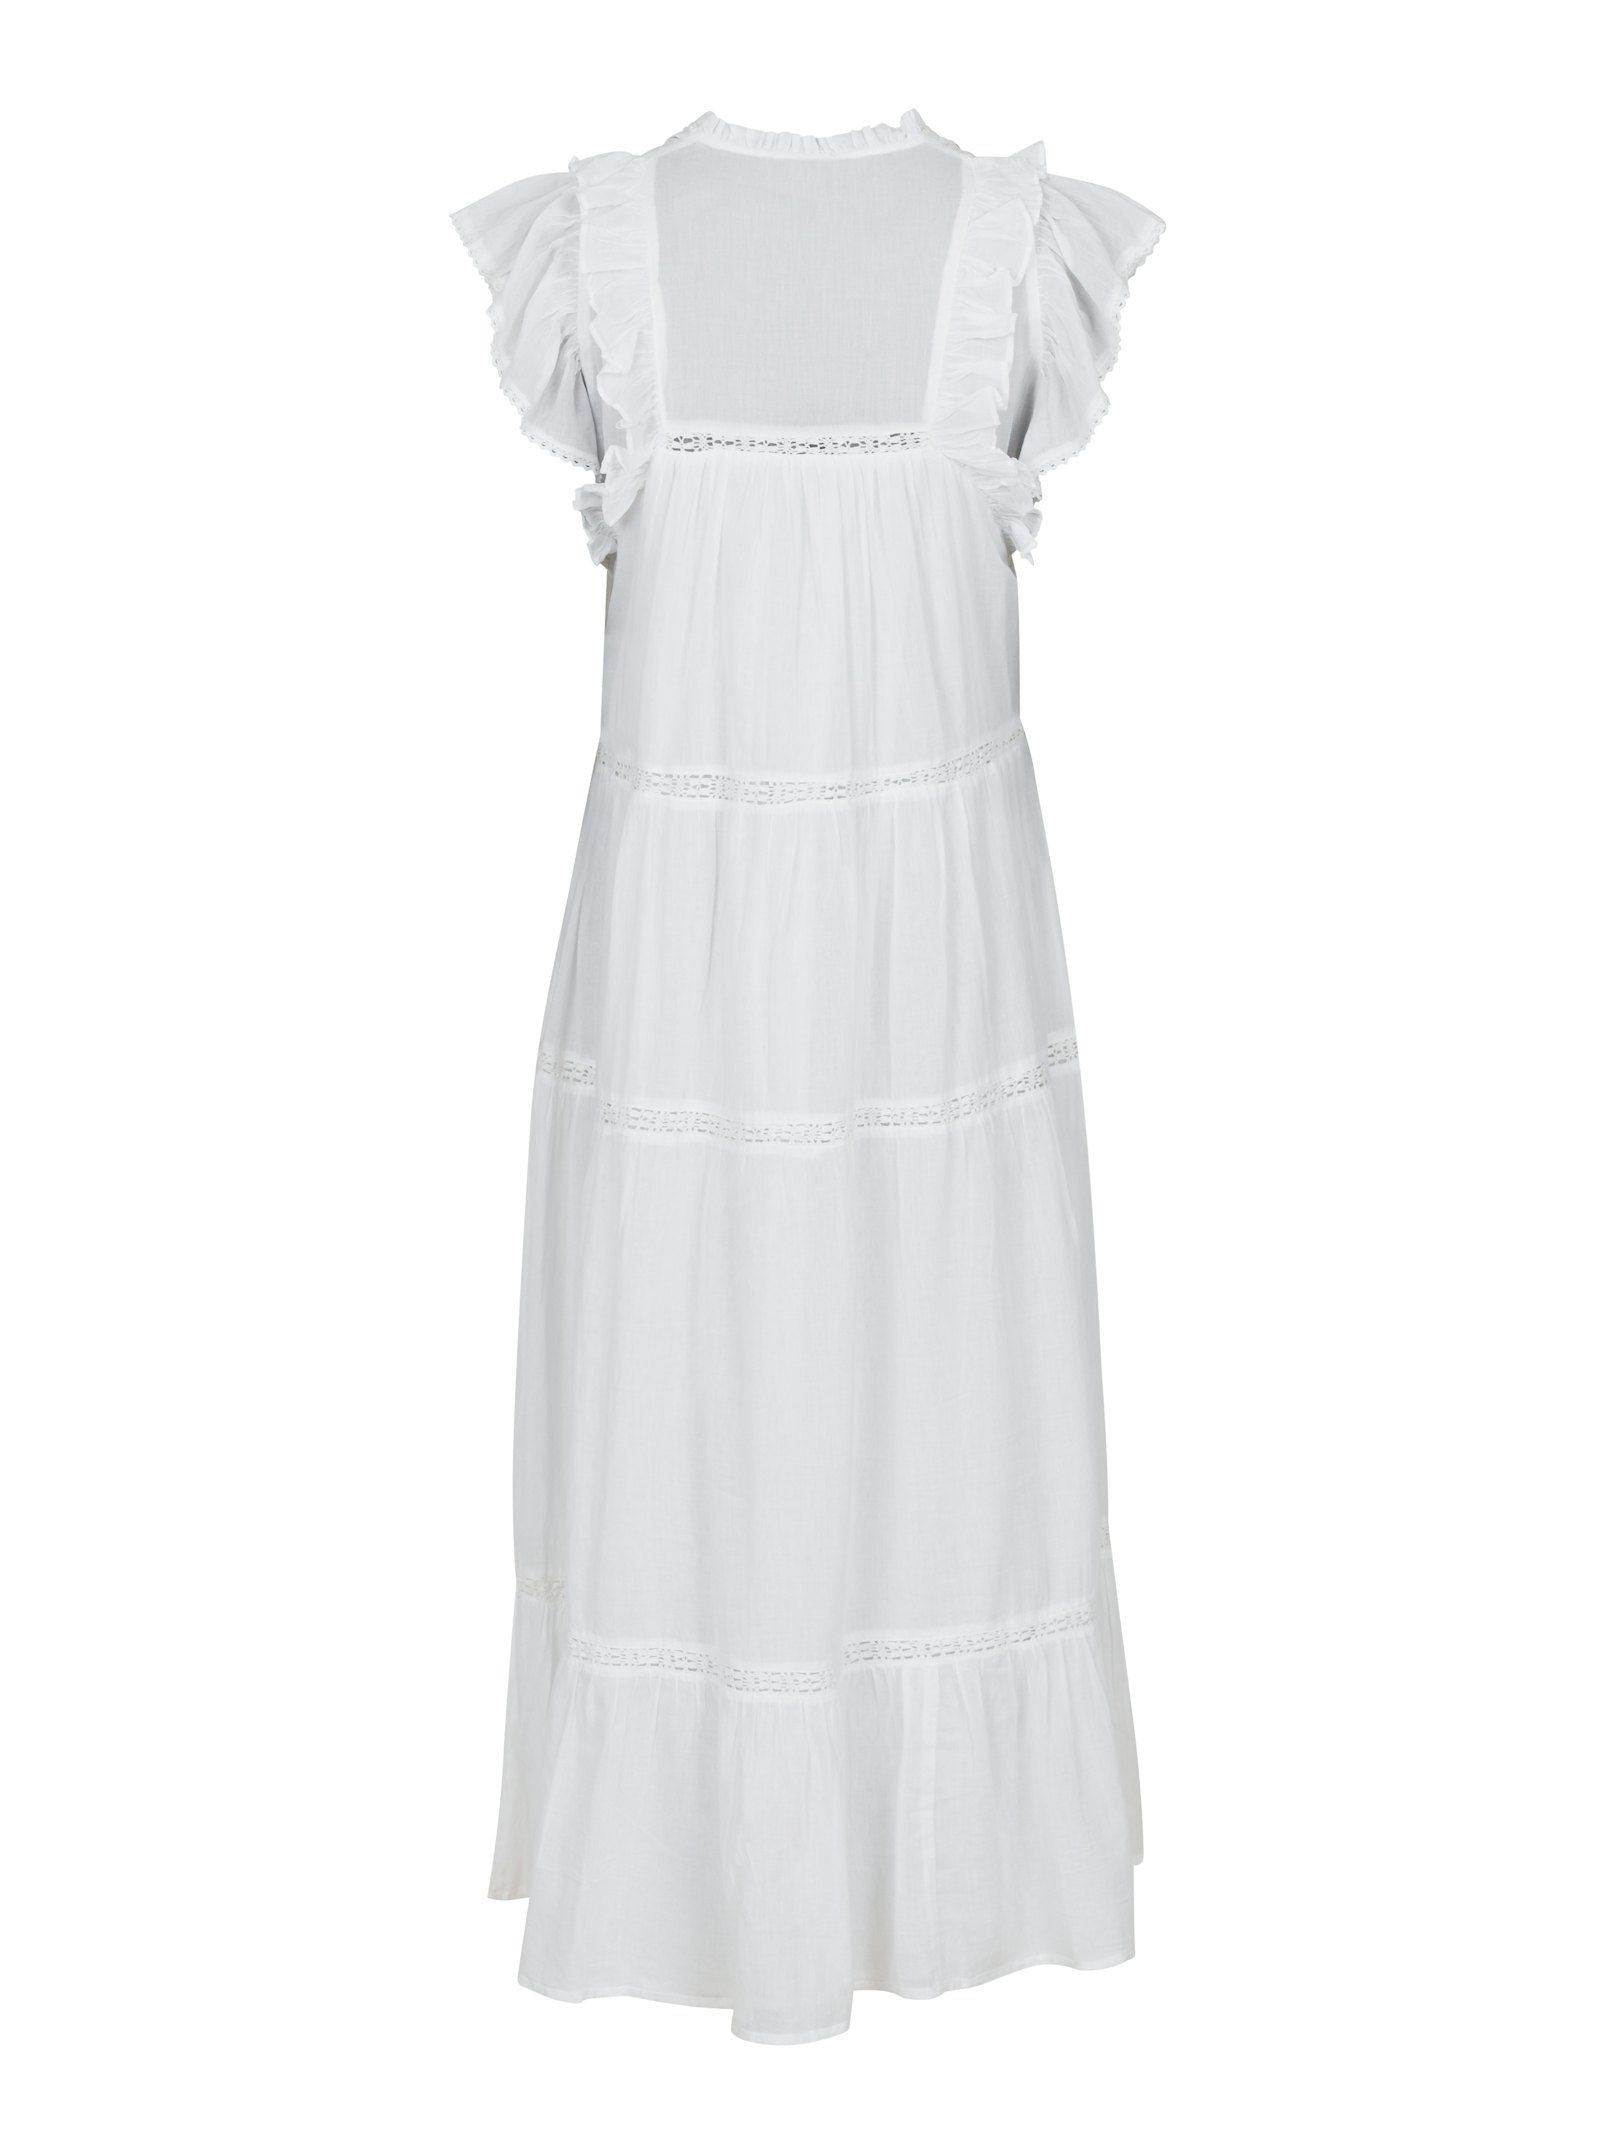 Ankita S Voile Dress - White